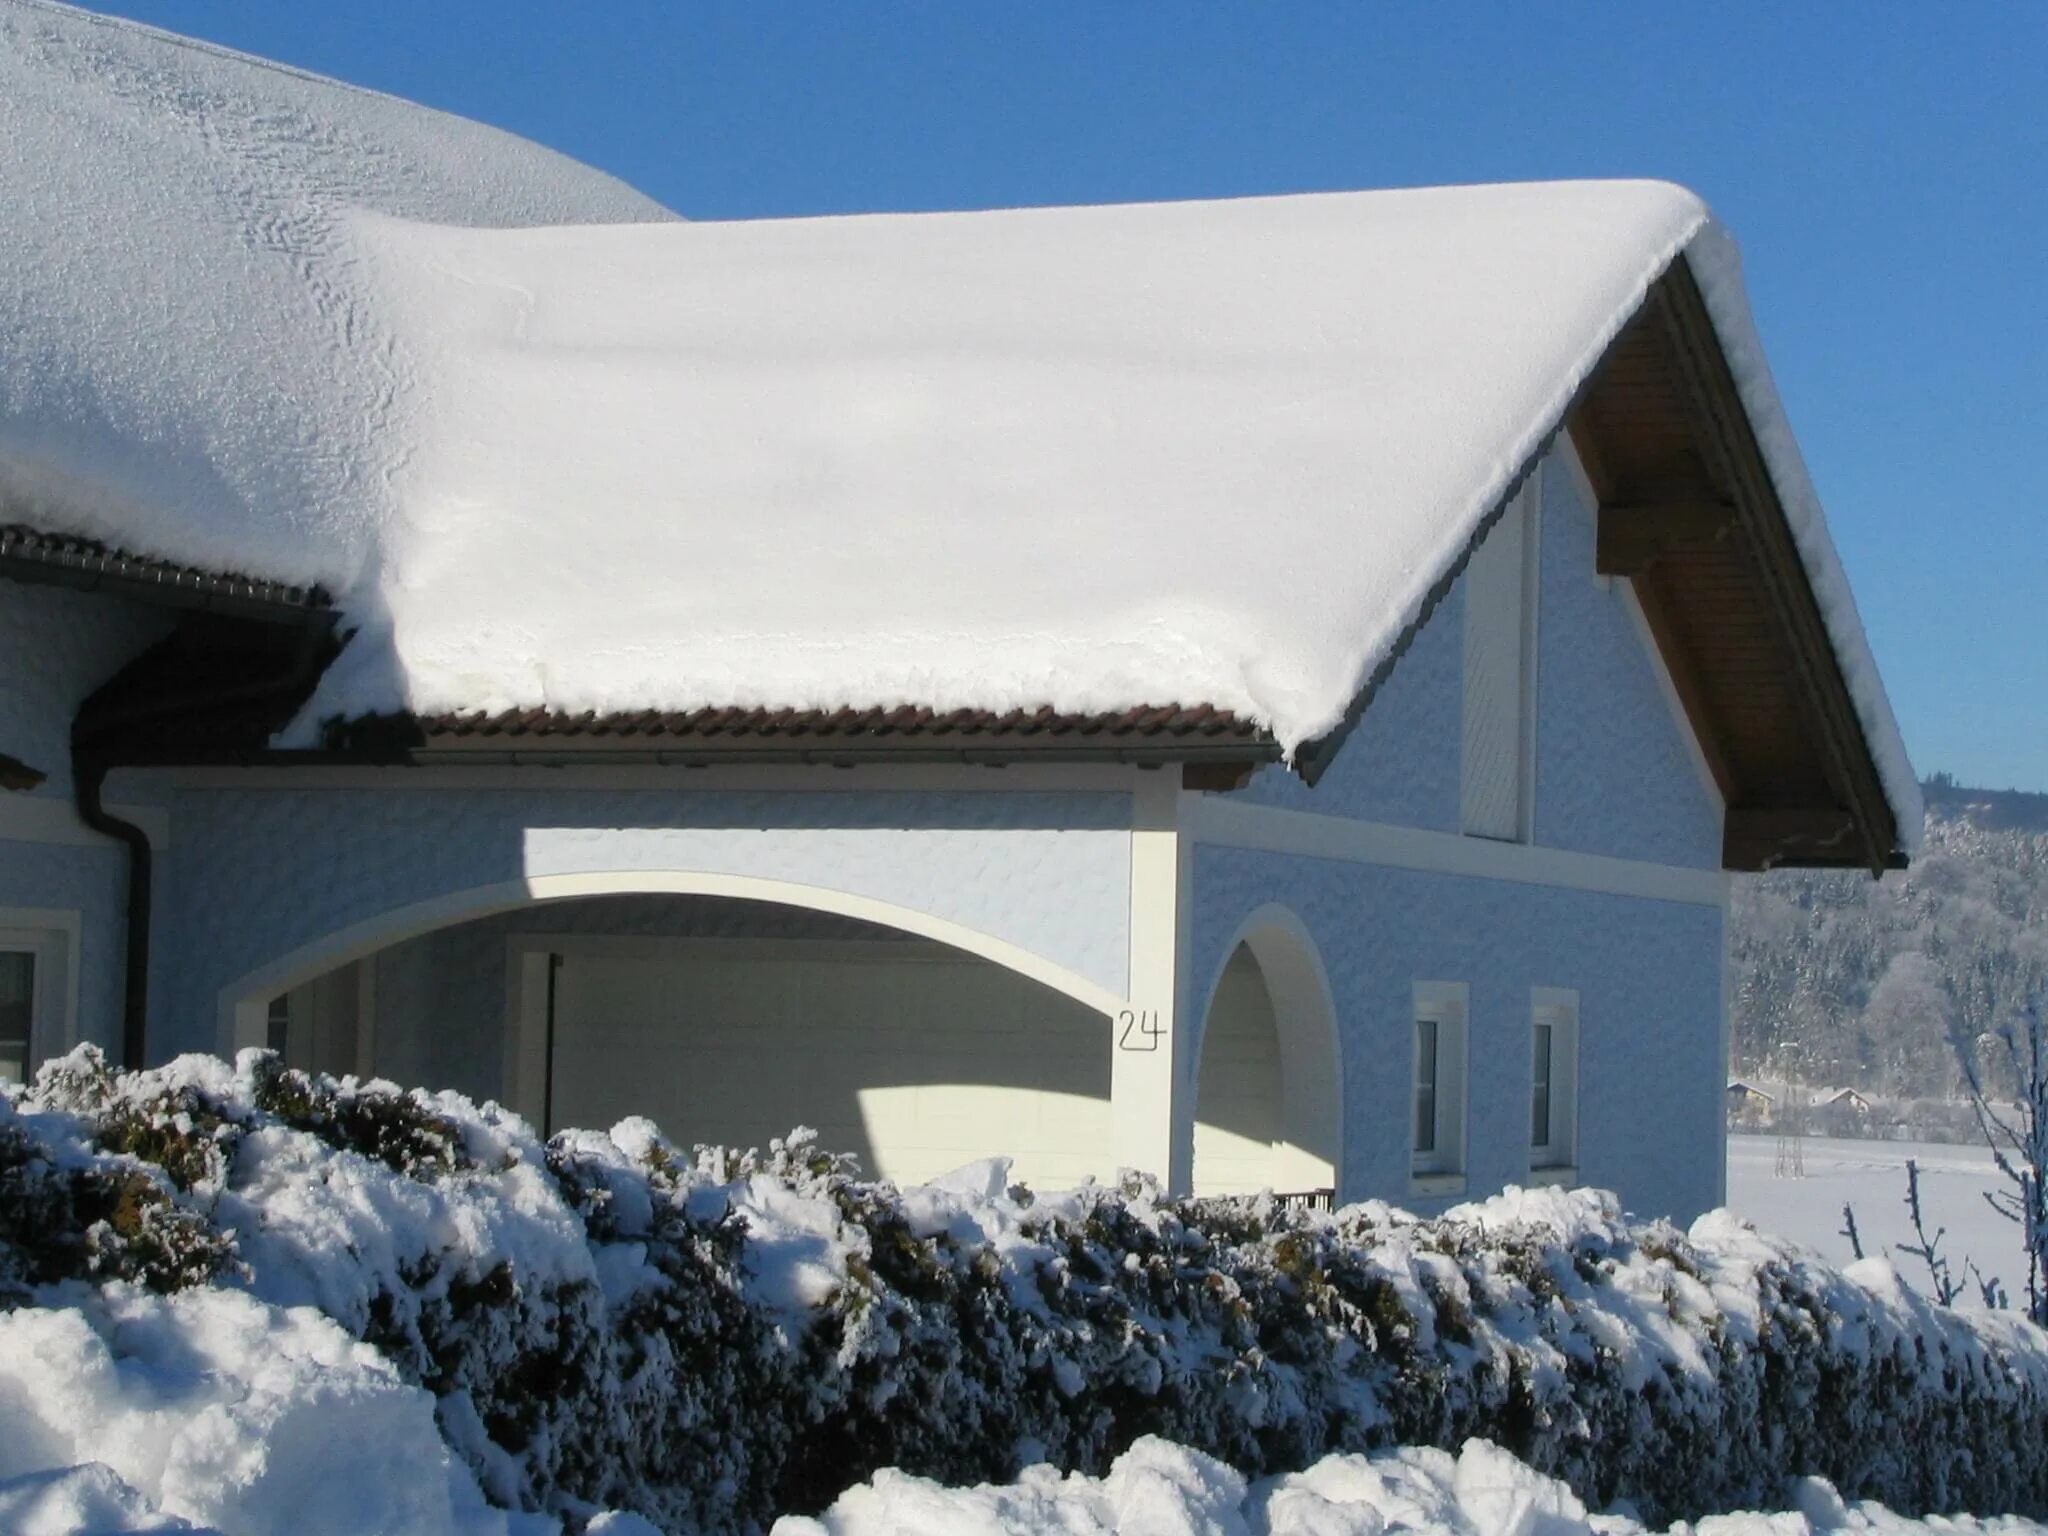 Снежка домики. Дом зимой. Снег на крыше. Заснеженные крыши домов. Крыша дома зимой.